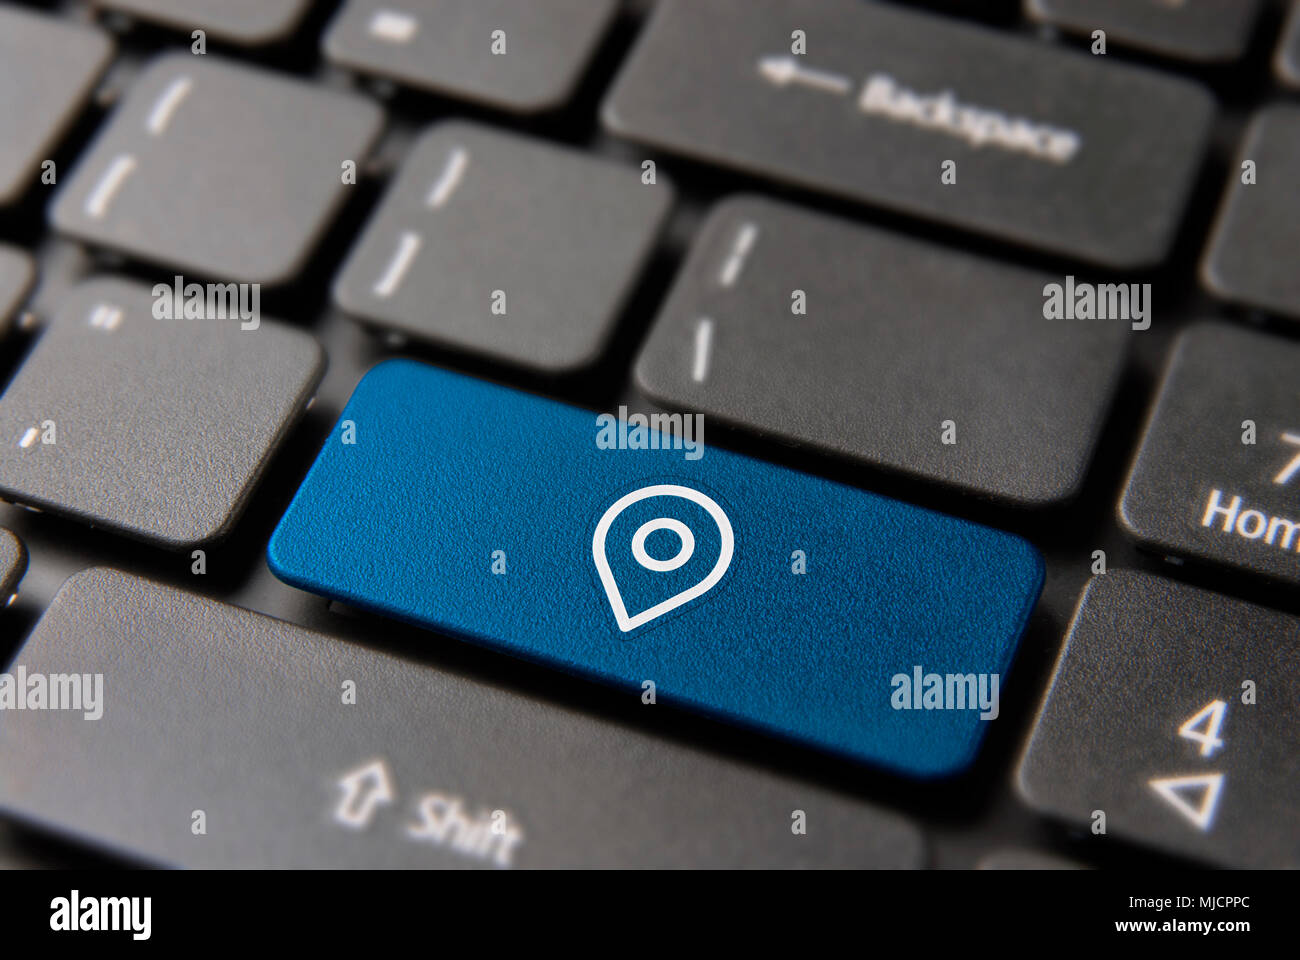 Geo Landkarte pin-Konzept: blaue Taste Taste mit GPS-Symbol auf dem Laptop Tastatur. Stockfoto